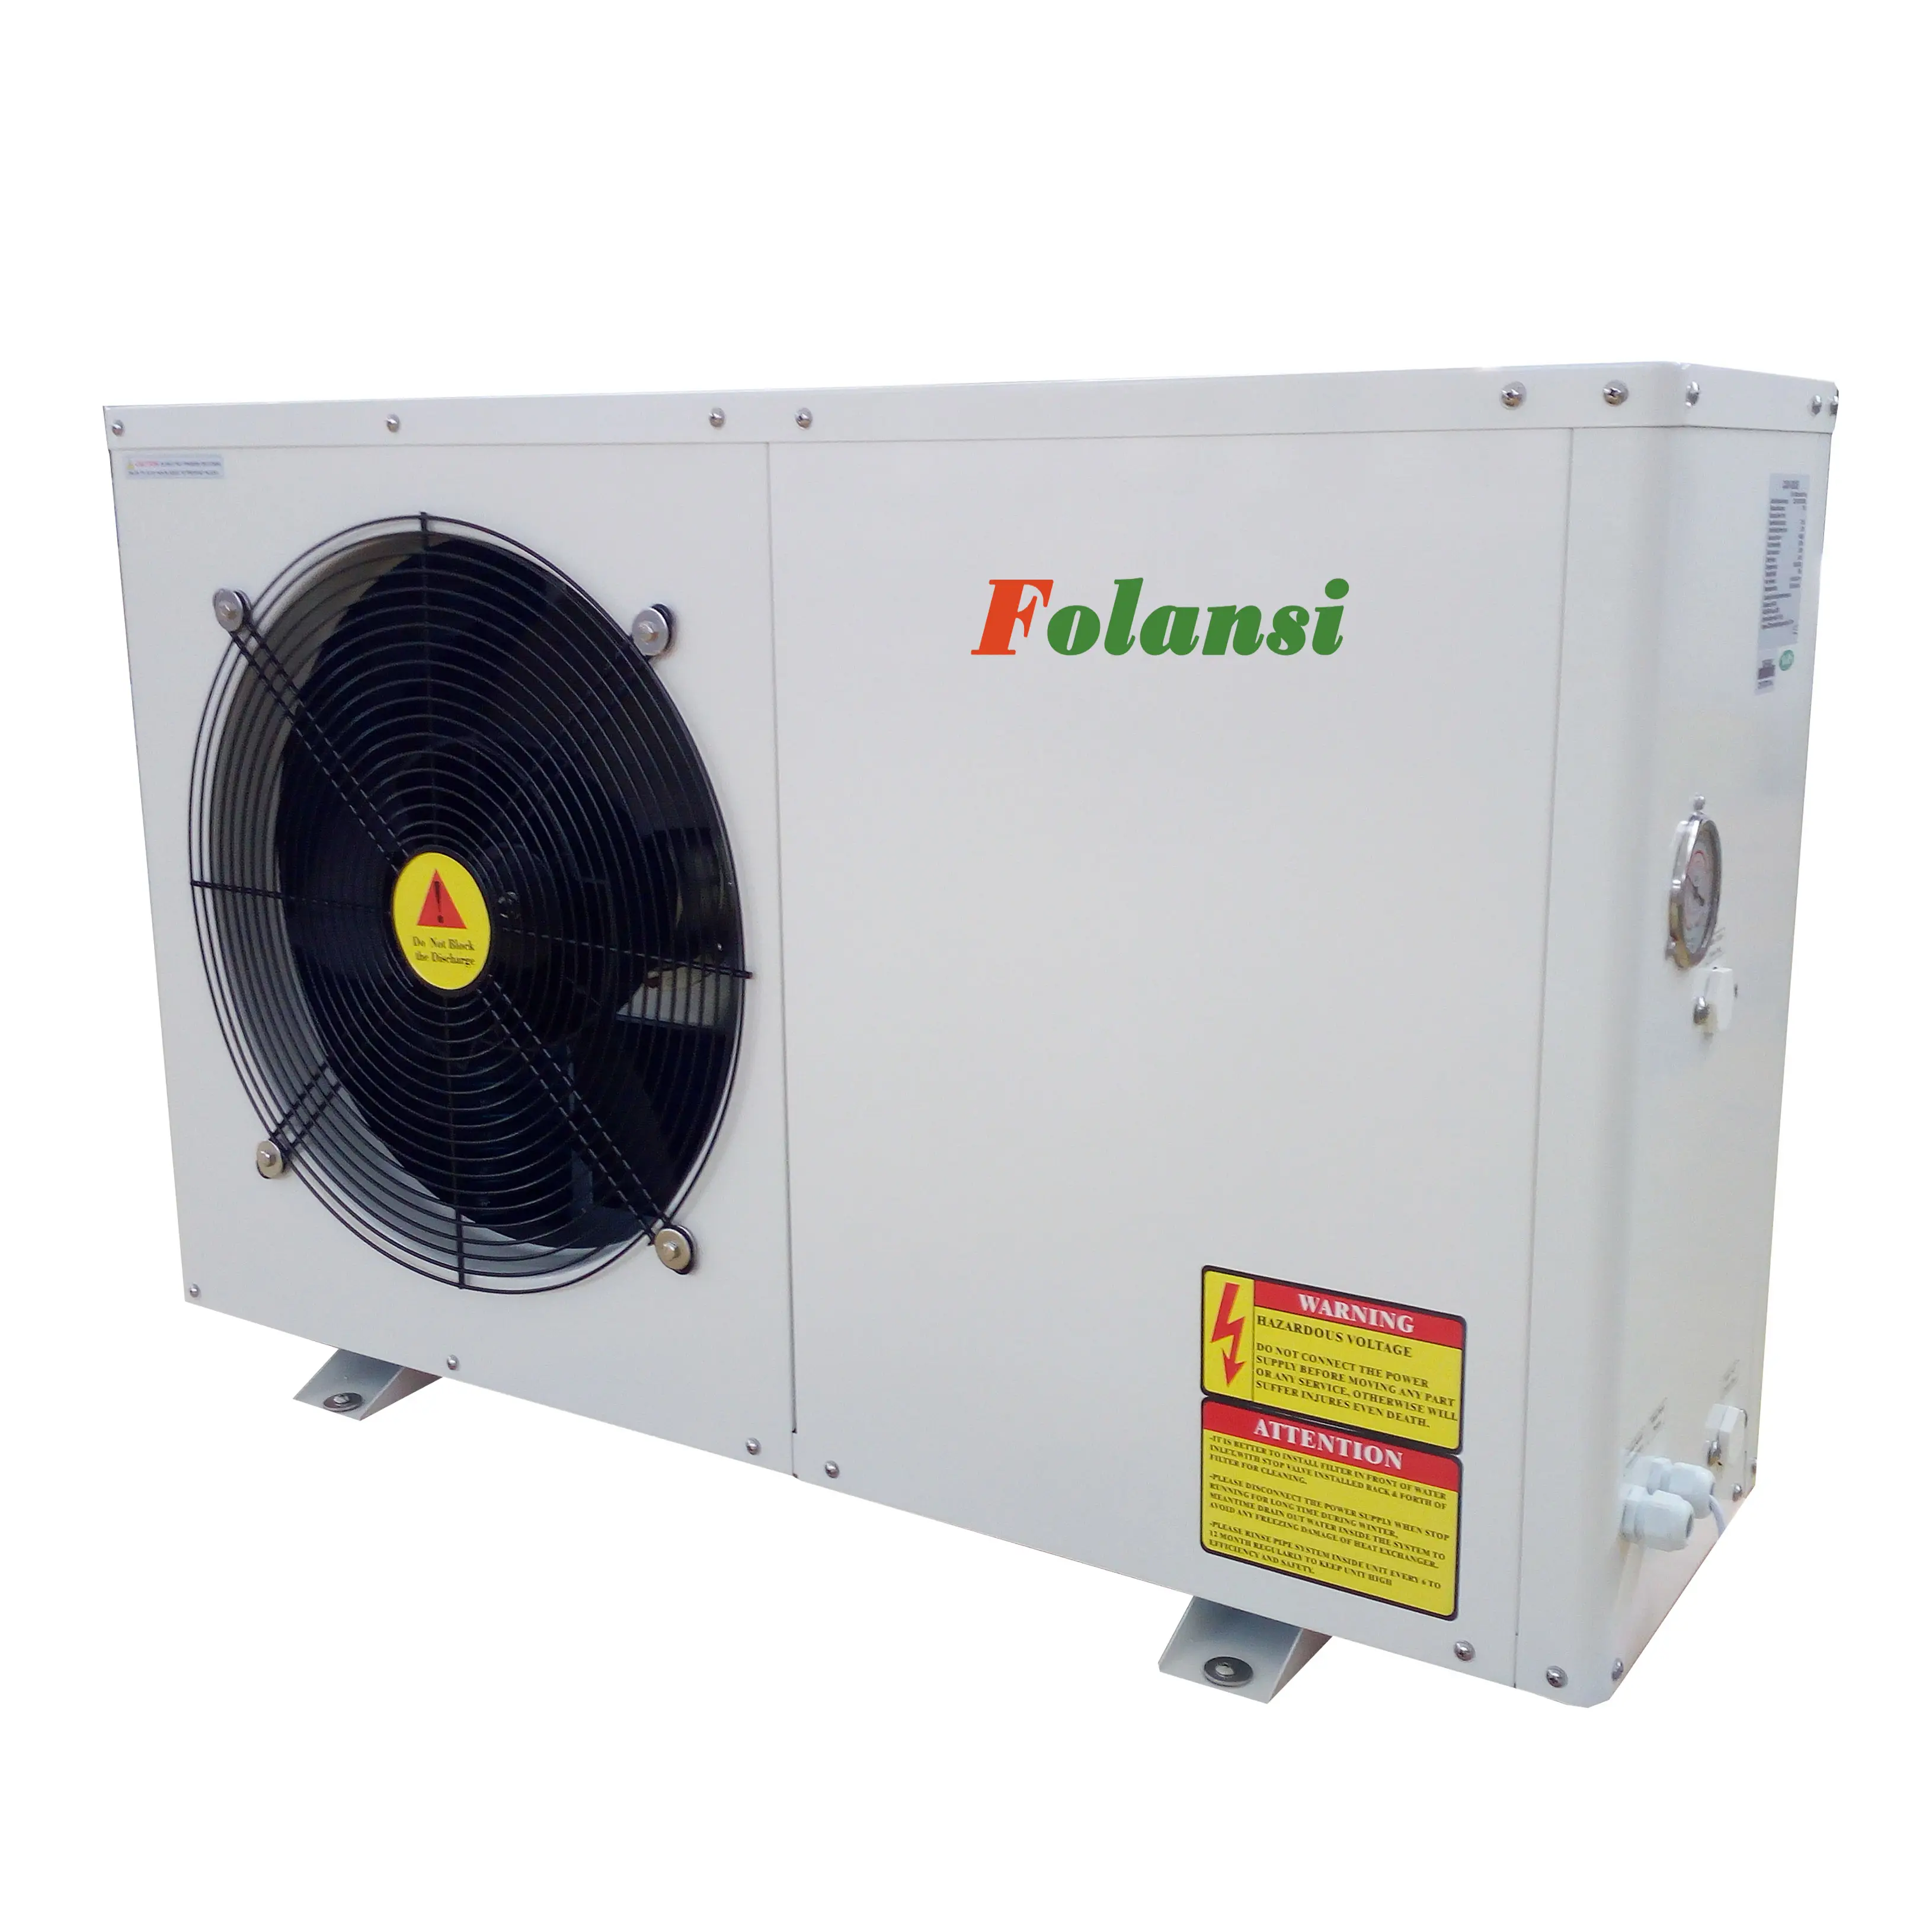 가정용 가정용 난방 냉각 온수 R32/R410a 7.1kw FA-02 공기 소스 히트 펌프 용 Folansi 공장 공기 열 펌프